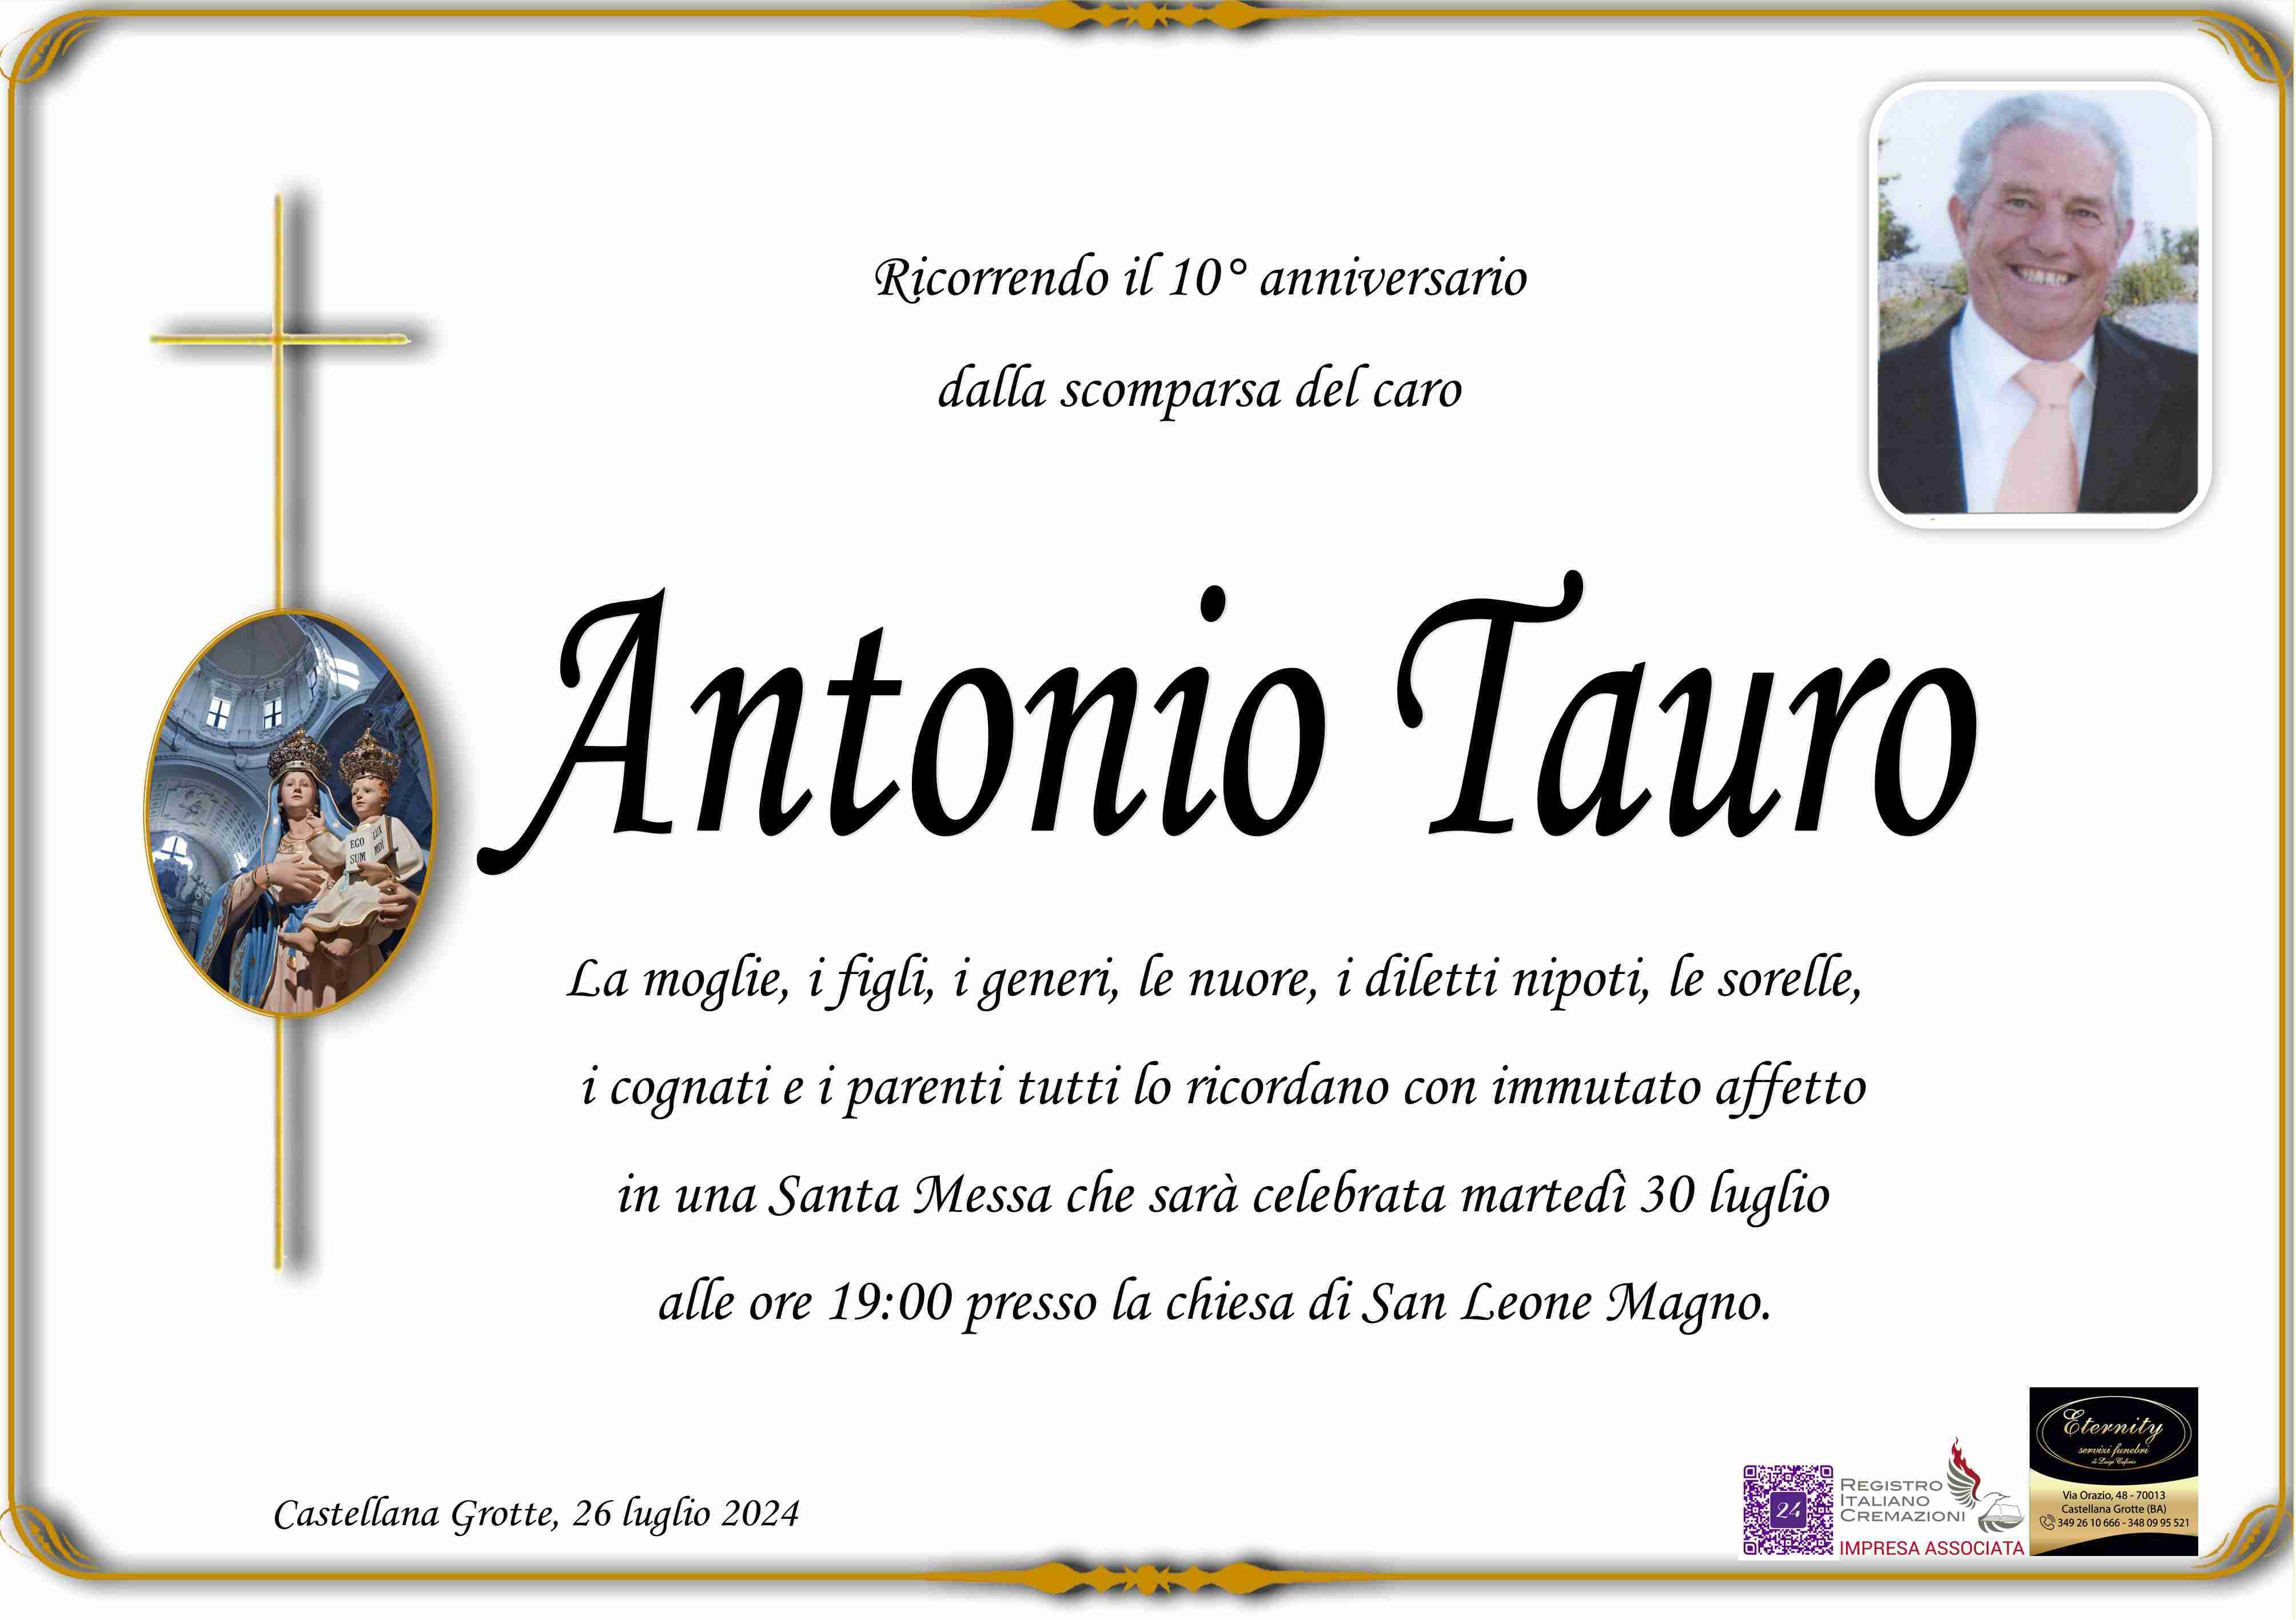 Antonio Tauro